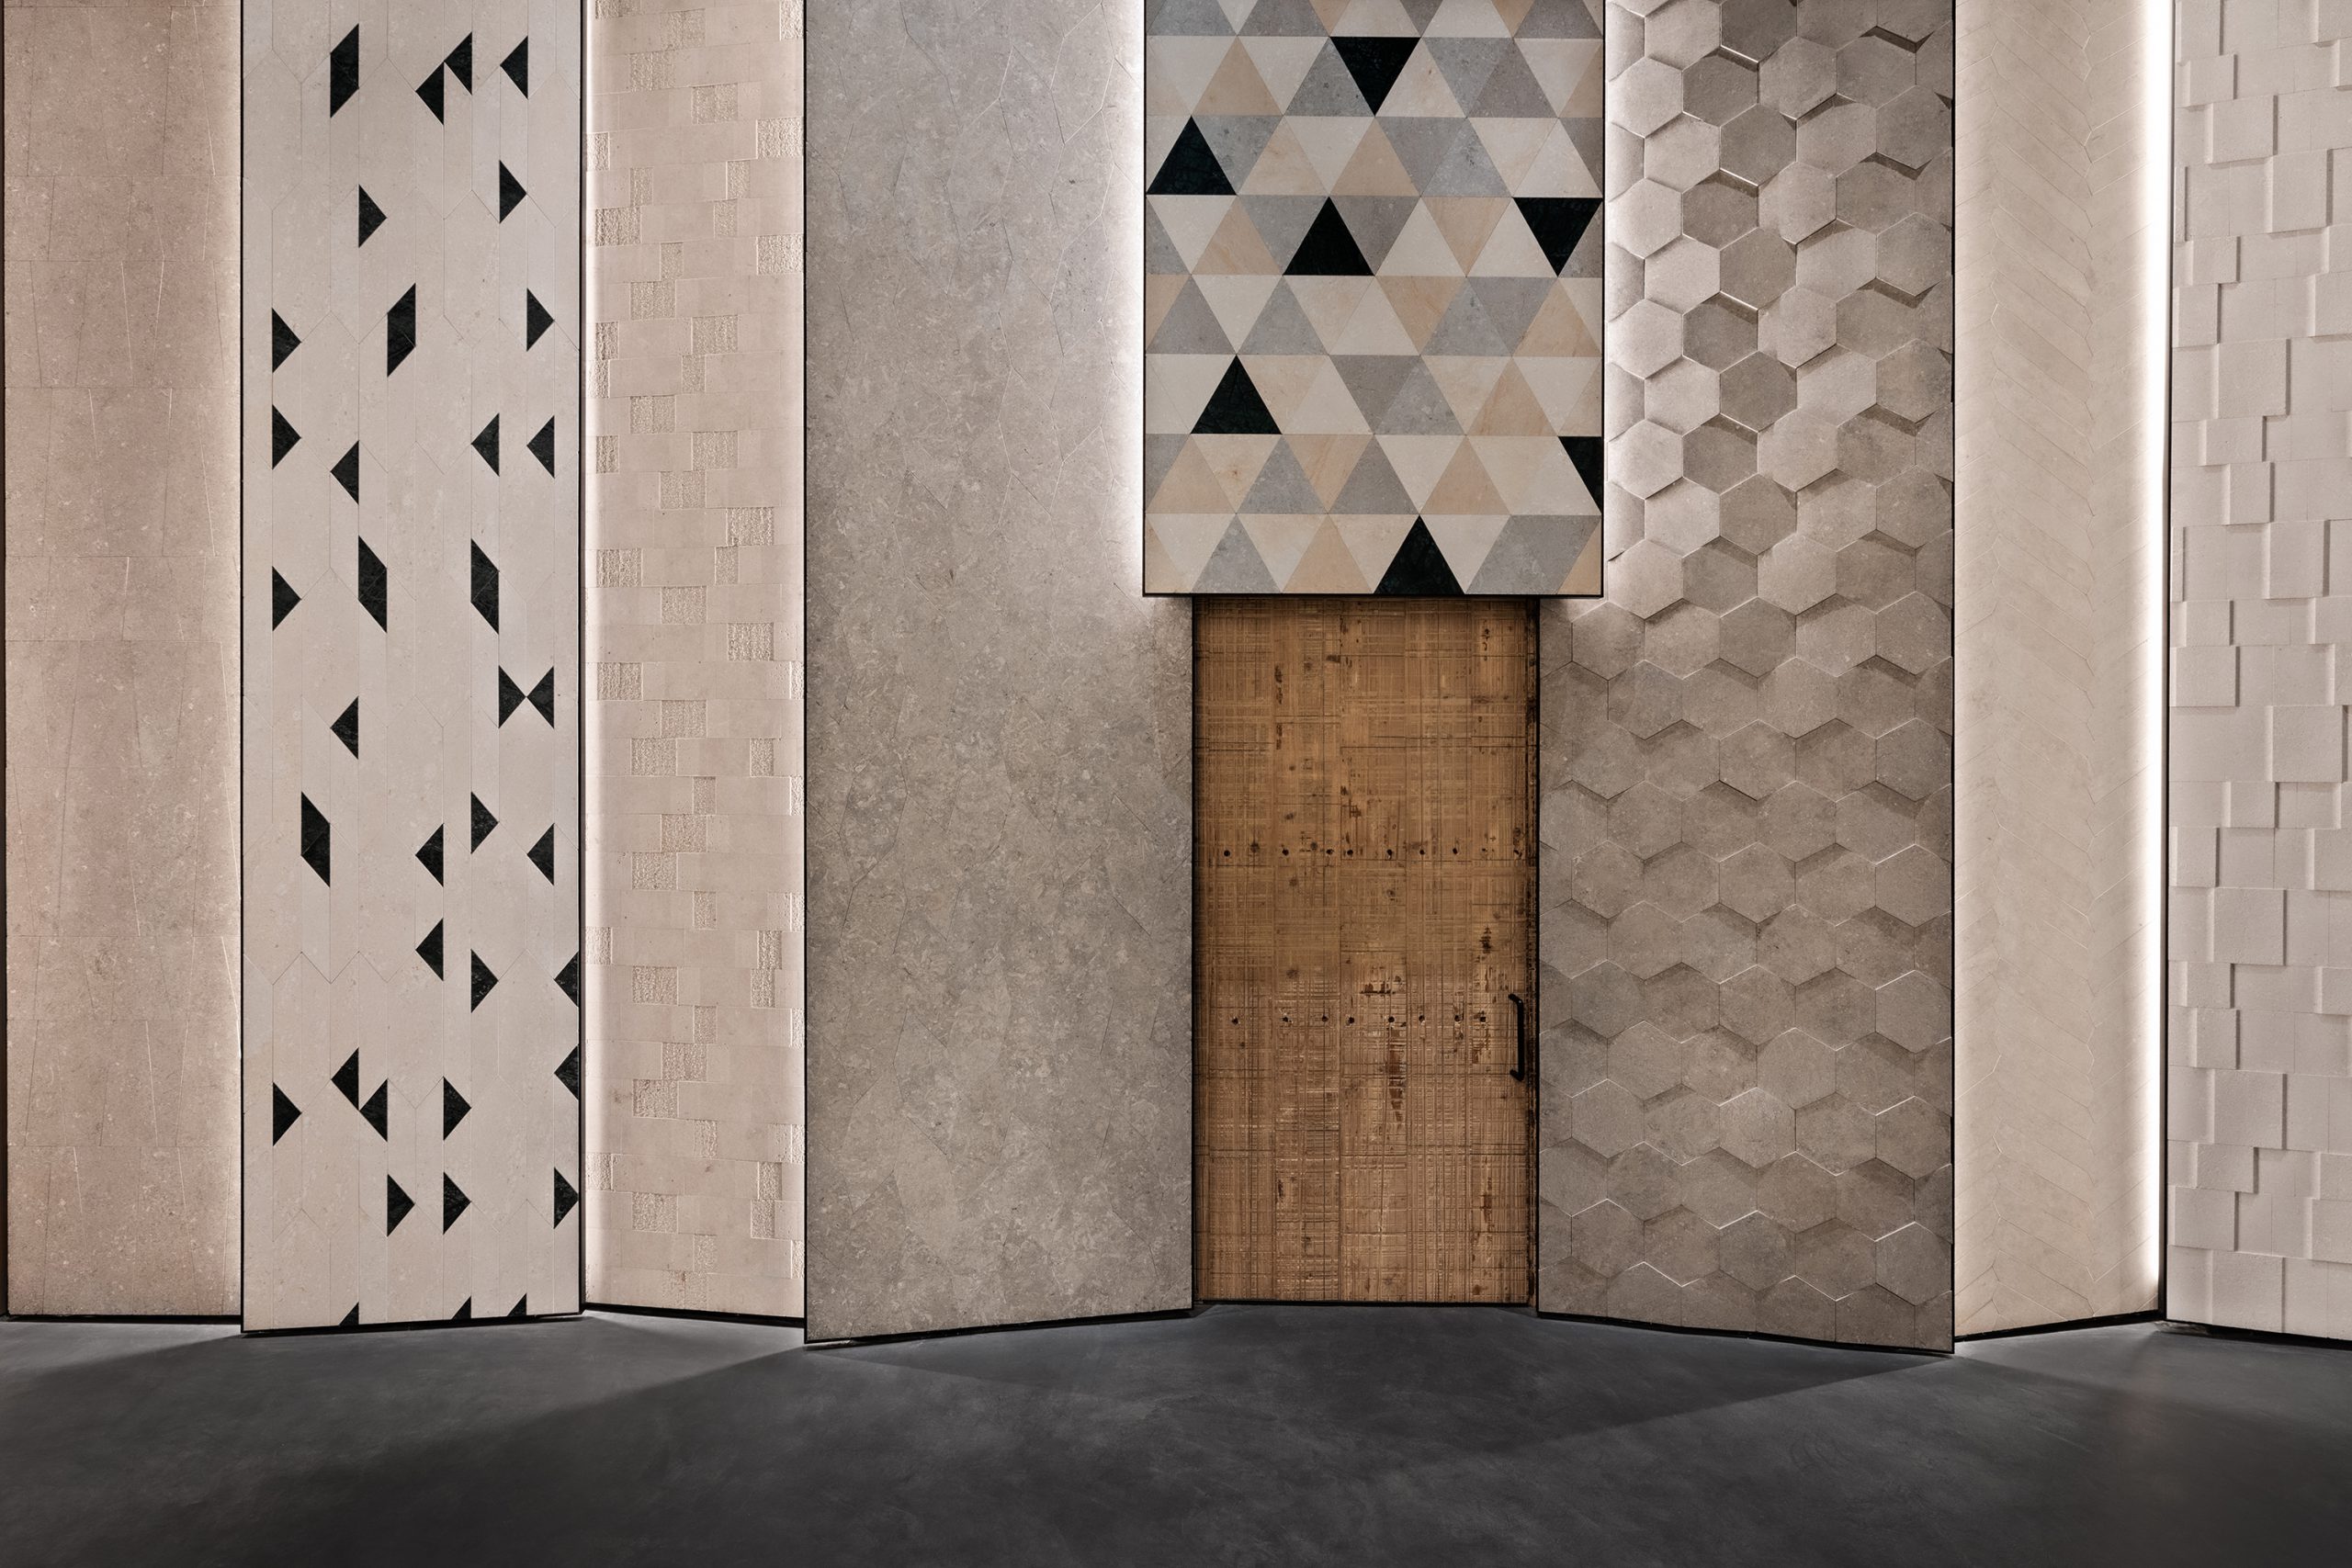 Tile wall in the Showroom Interior Design by Debiasi Sandri for Grassi Pietre